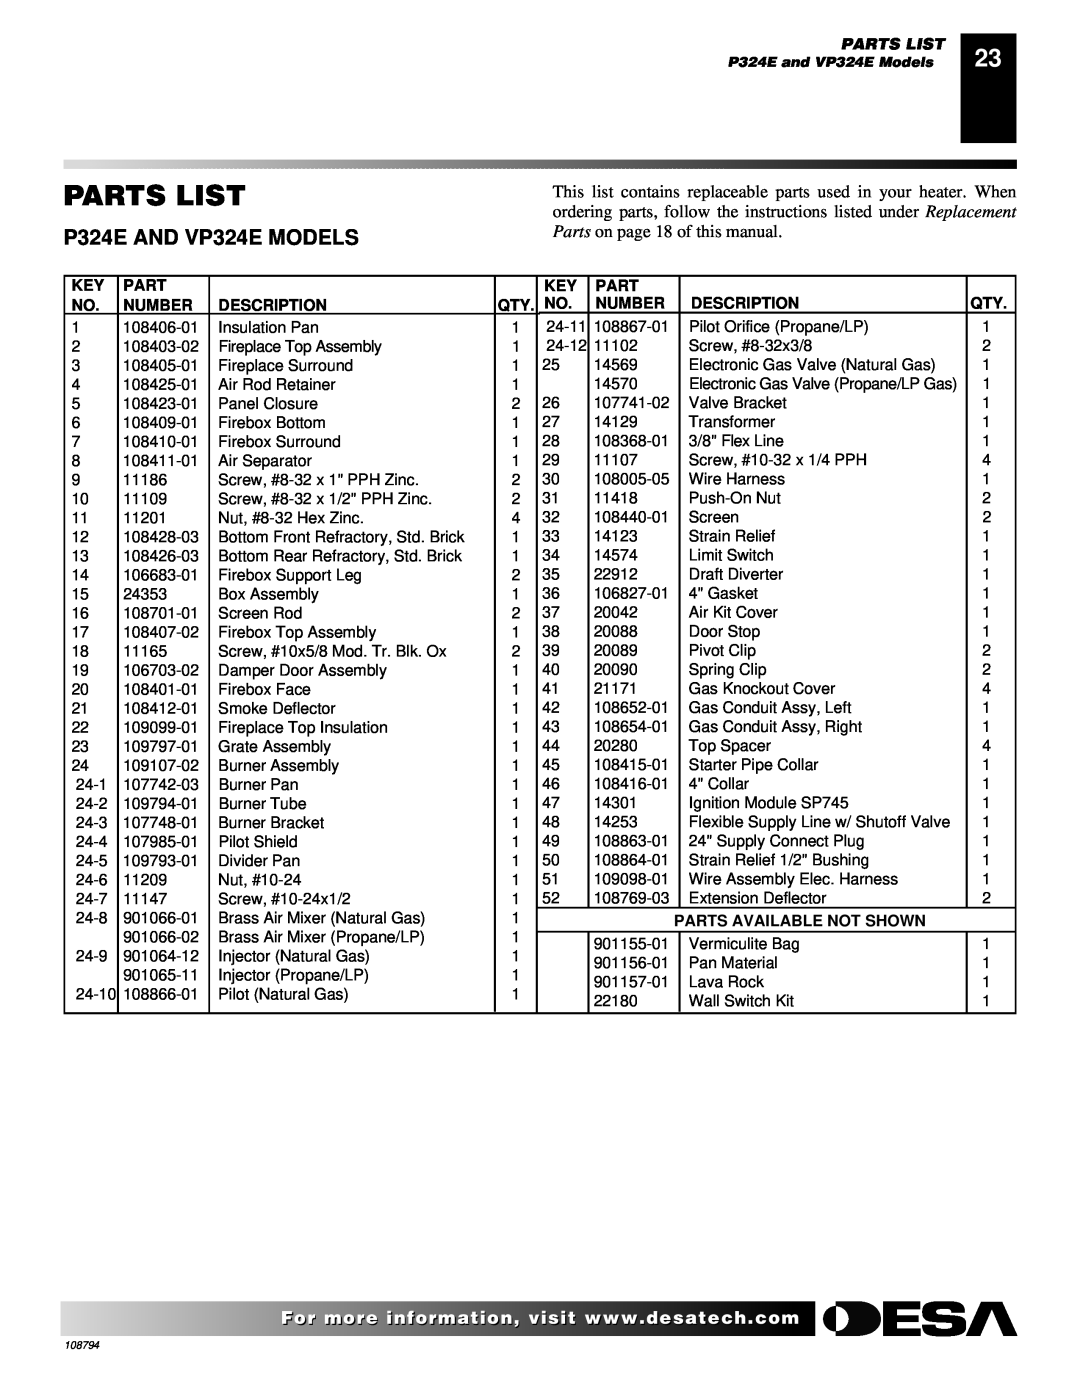 Desa P324E, VP324E, P325E, VP325E, P325E(B), VP325E(B) Parts List, Number, Description, Parts Available Not Shown 